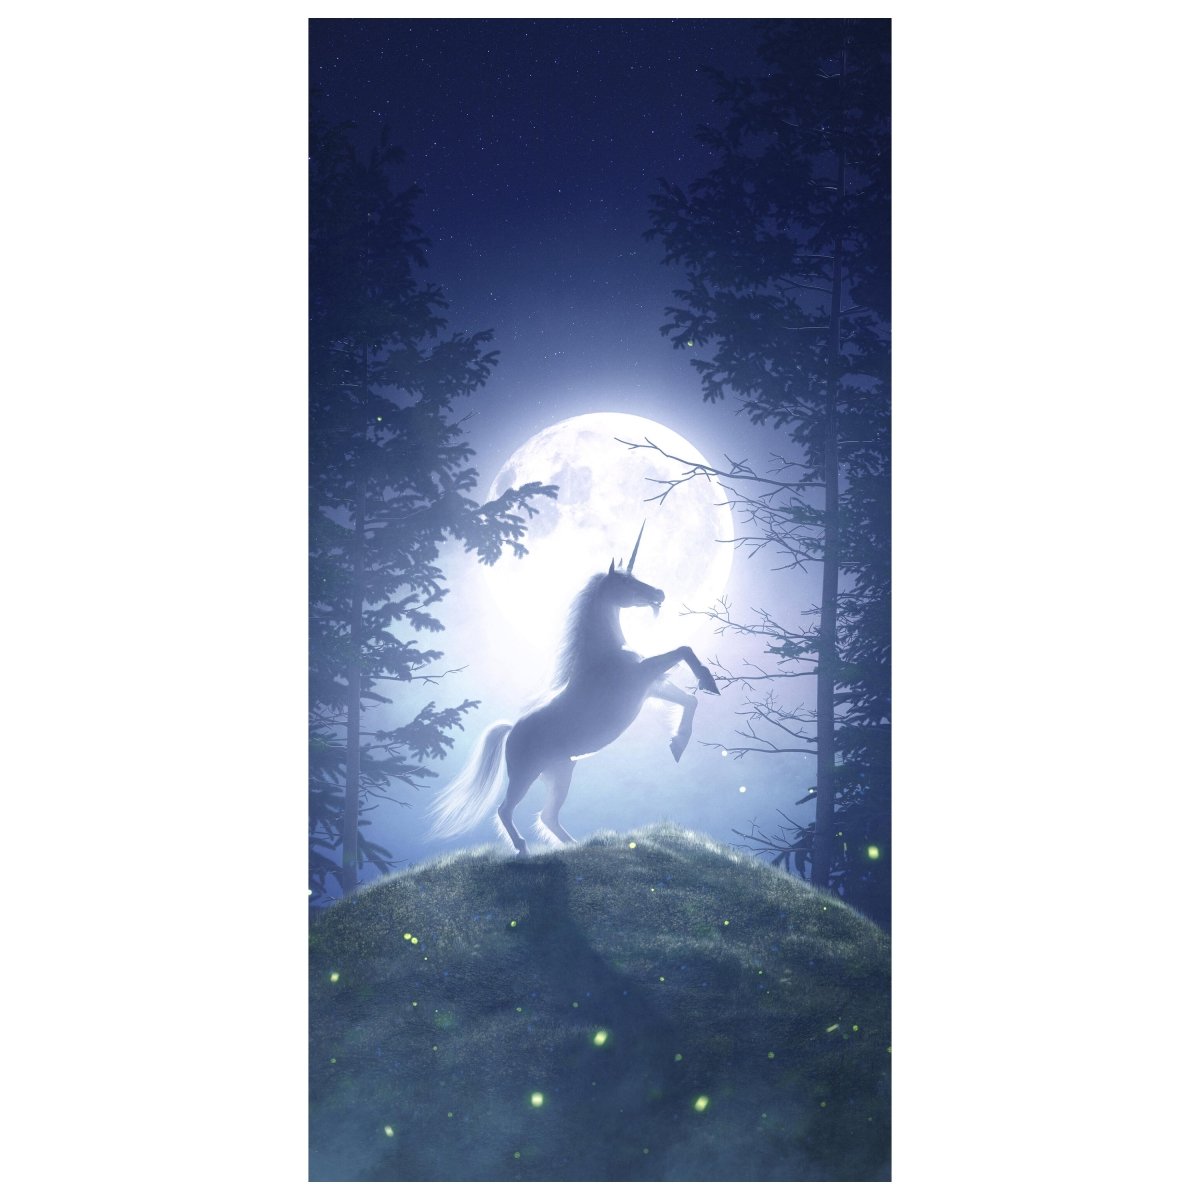 Türtapete Einhorn im Mondschein, Wald, Nacht M1188 - Bild 2